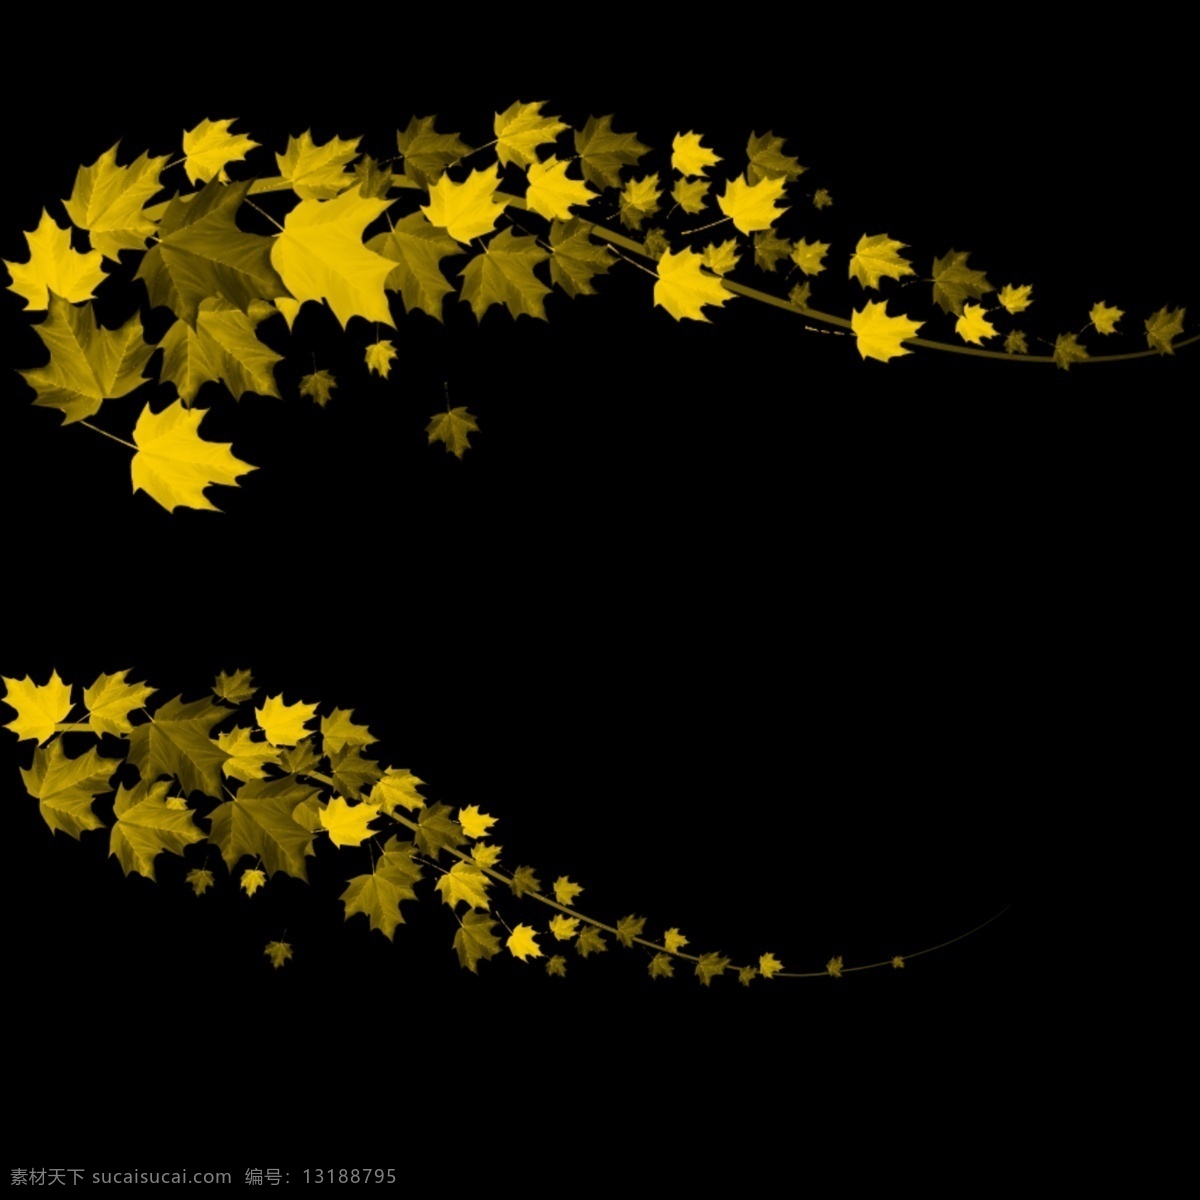 秋天的叶子 秋叶 黄色的叶子 秋天 飘落 黑色